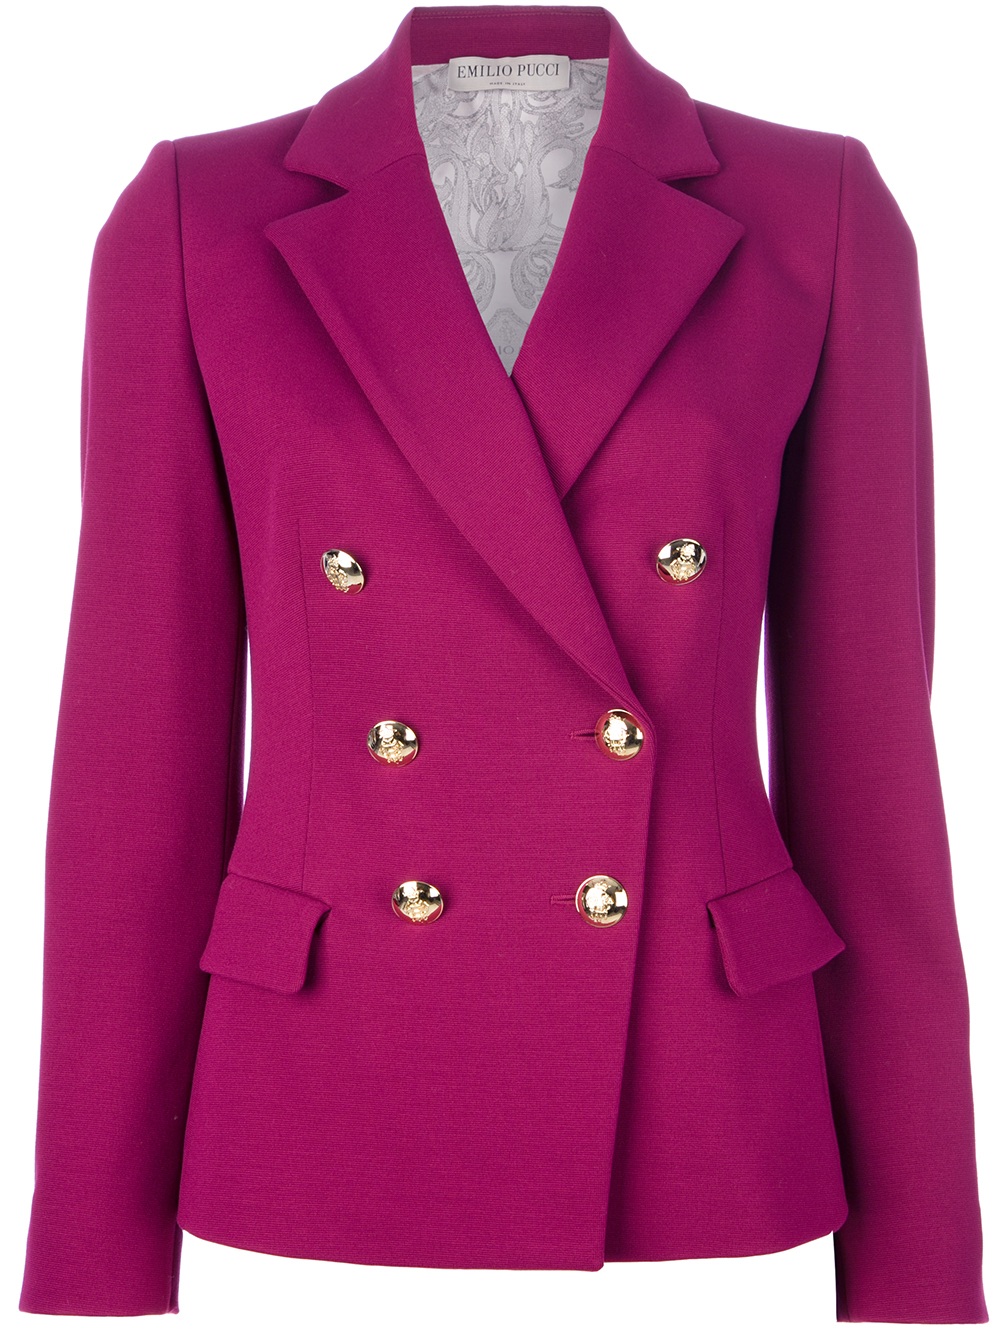 Emilio Pucci Double Breasted Blazer in Purple - Lyst